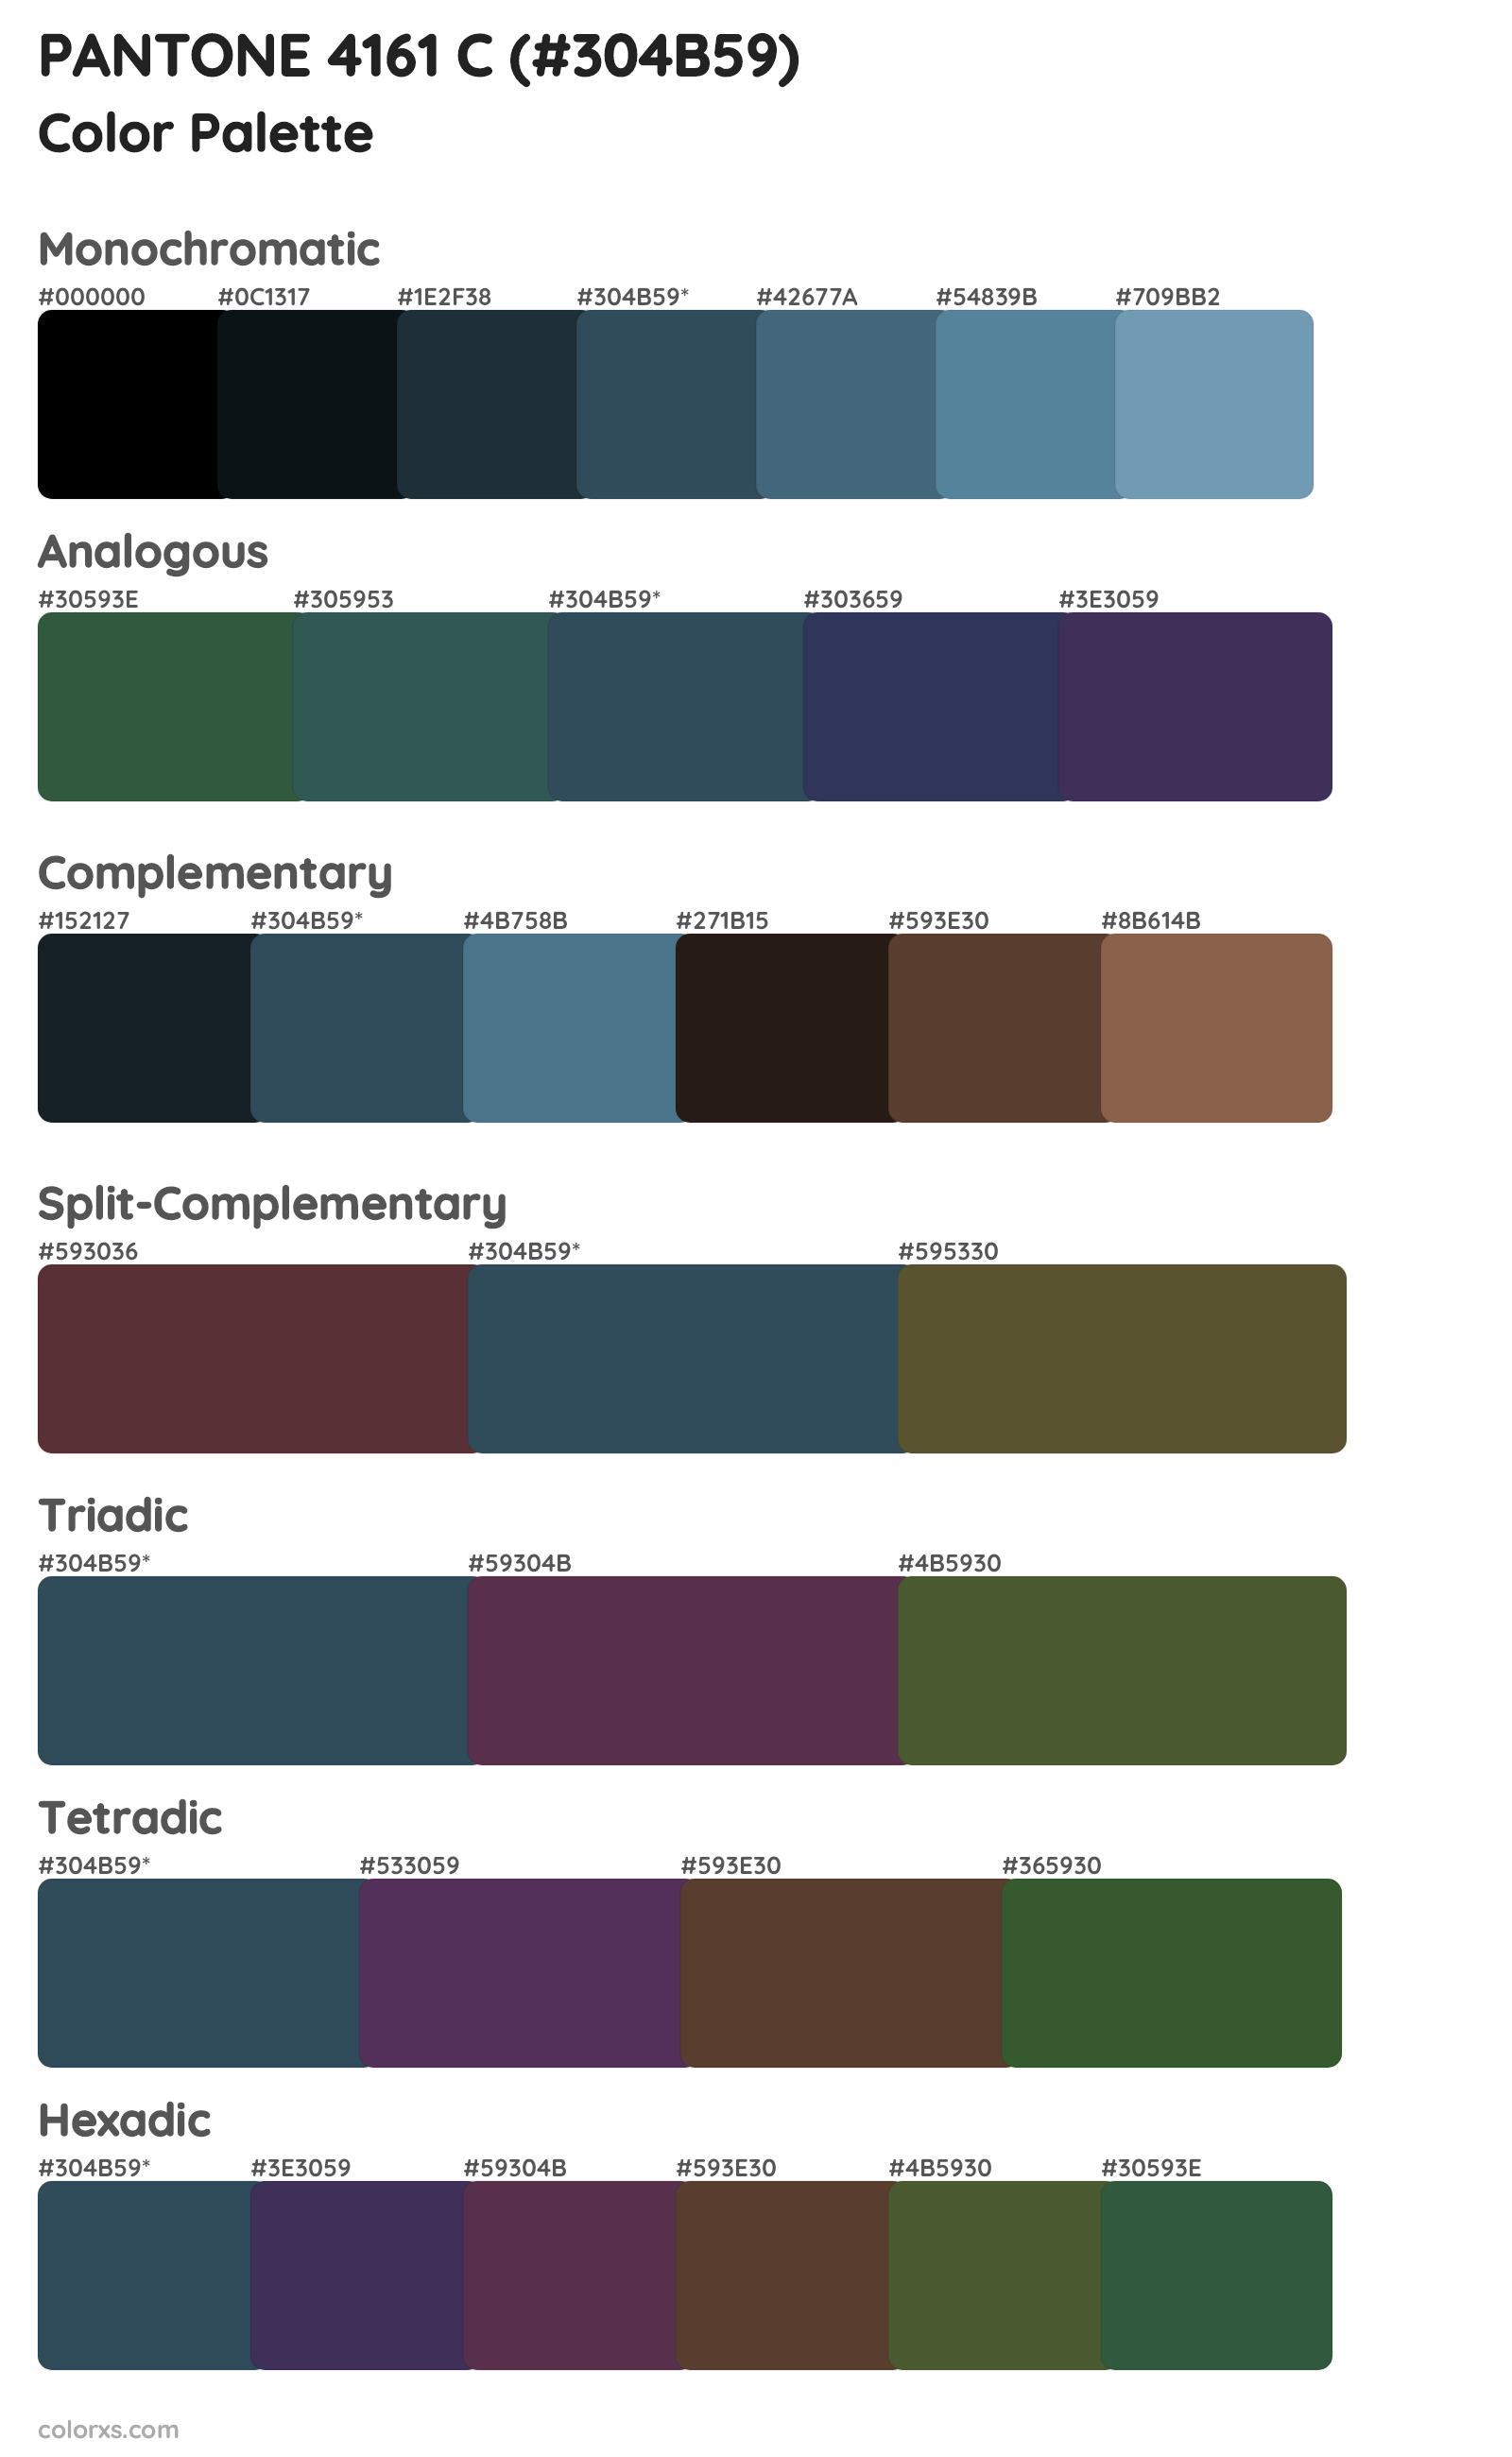 PANTONE 4161 C Color Scheme Palettes